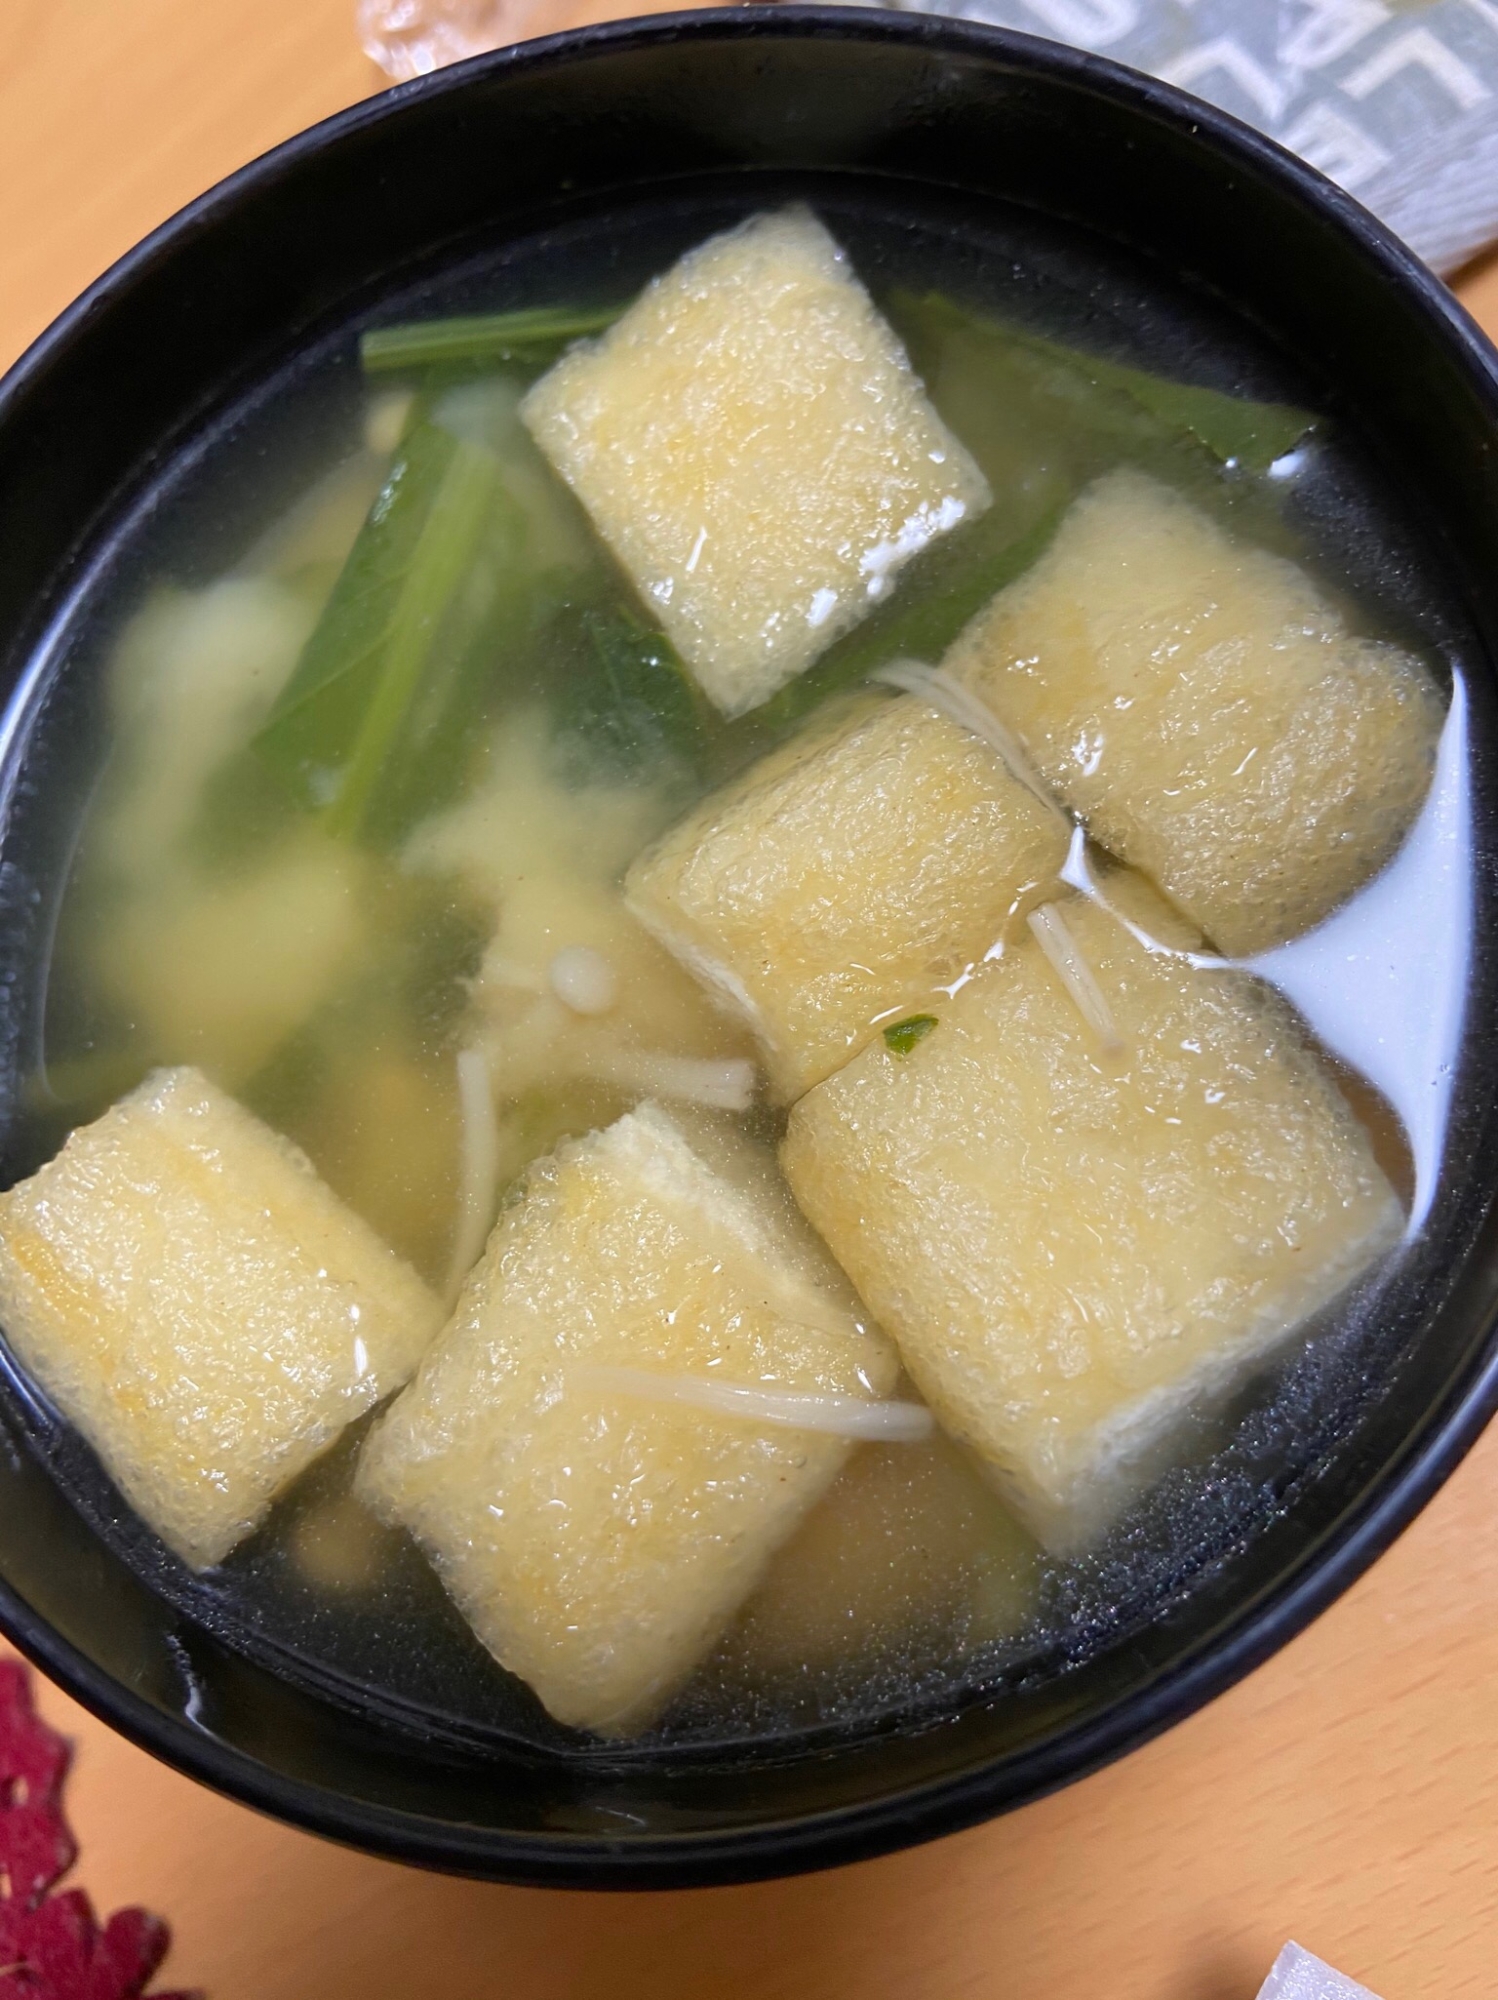 小松菜とお揚げさんのお味噌汁